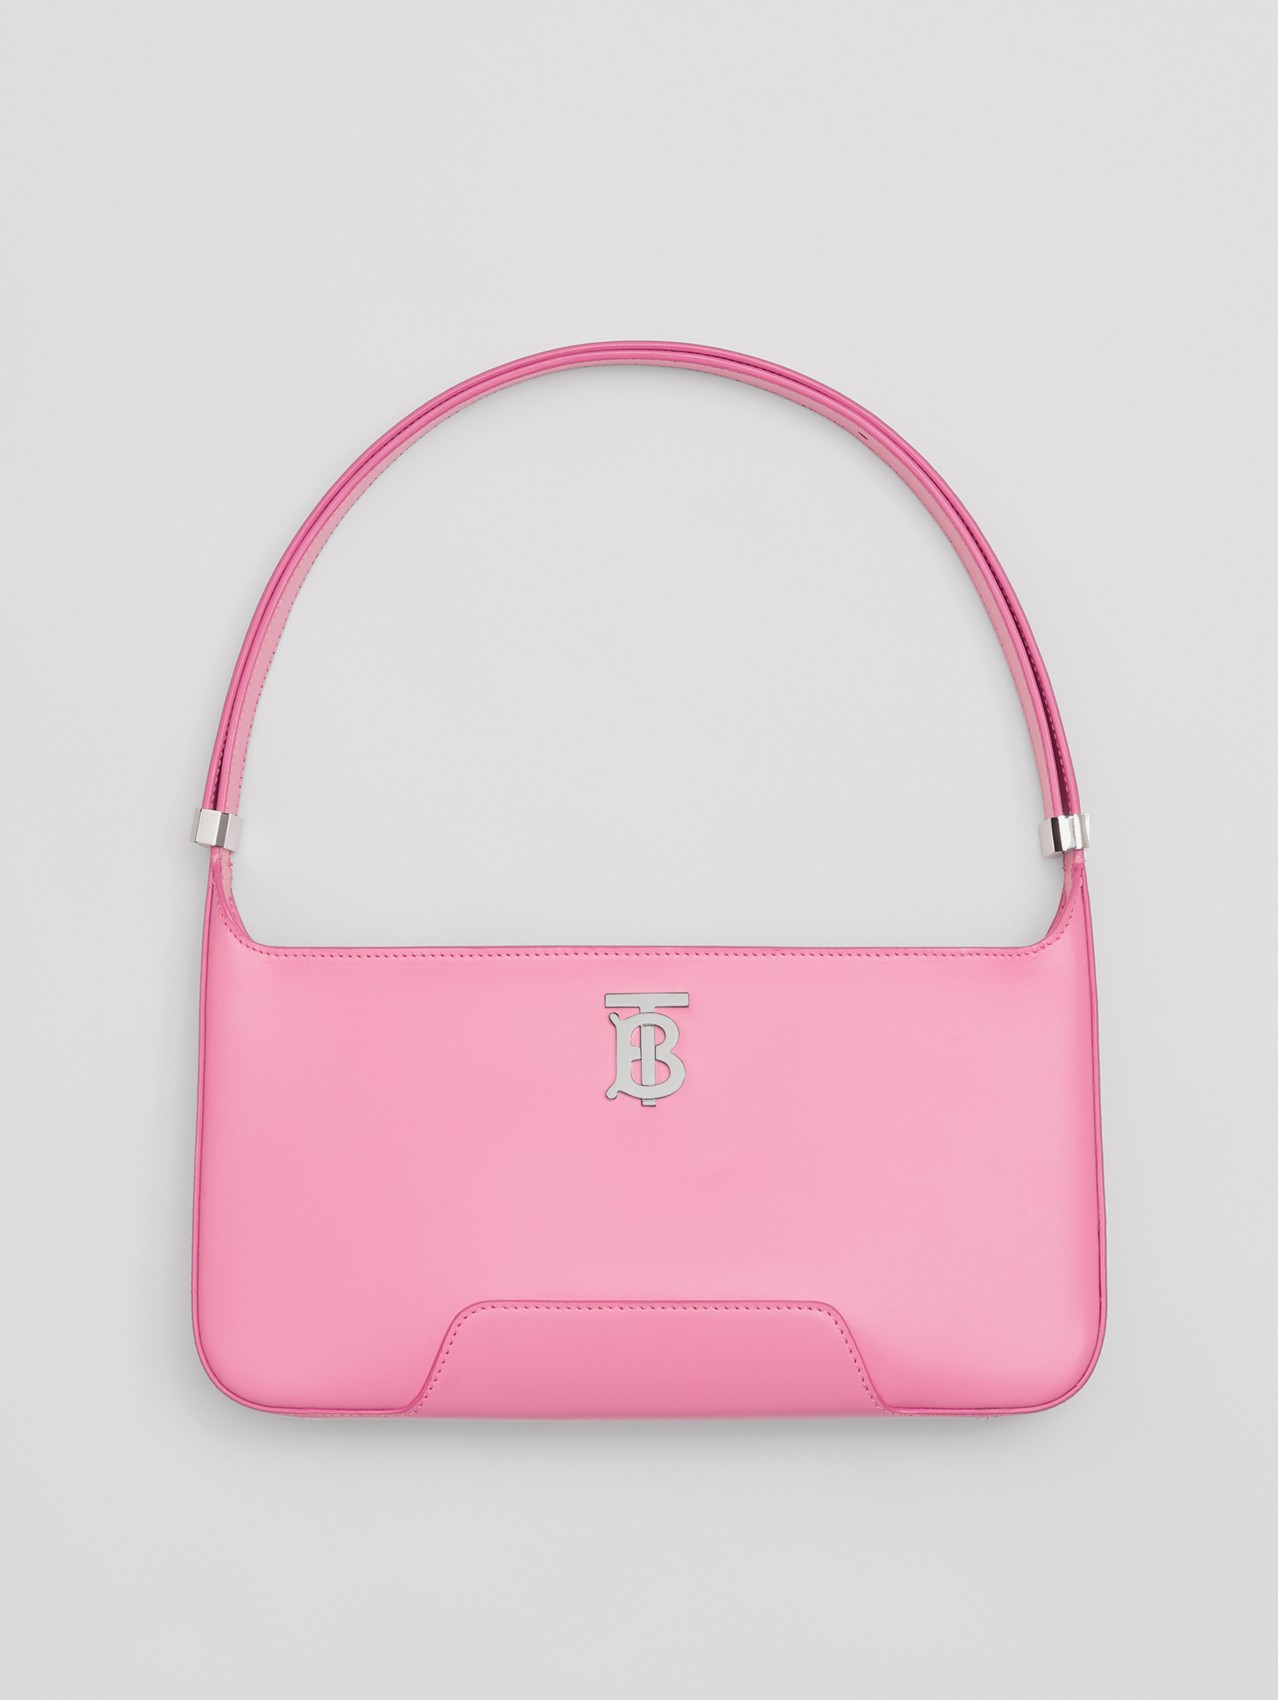 Leather TB Shoulder Bag in Primrose Pink